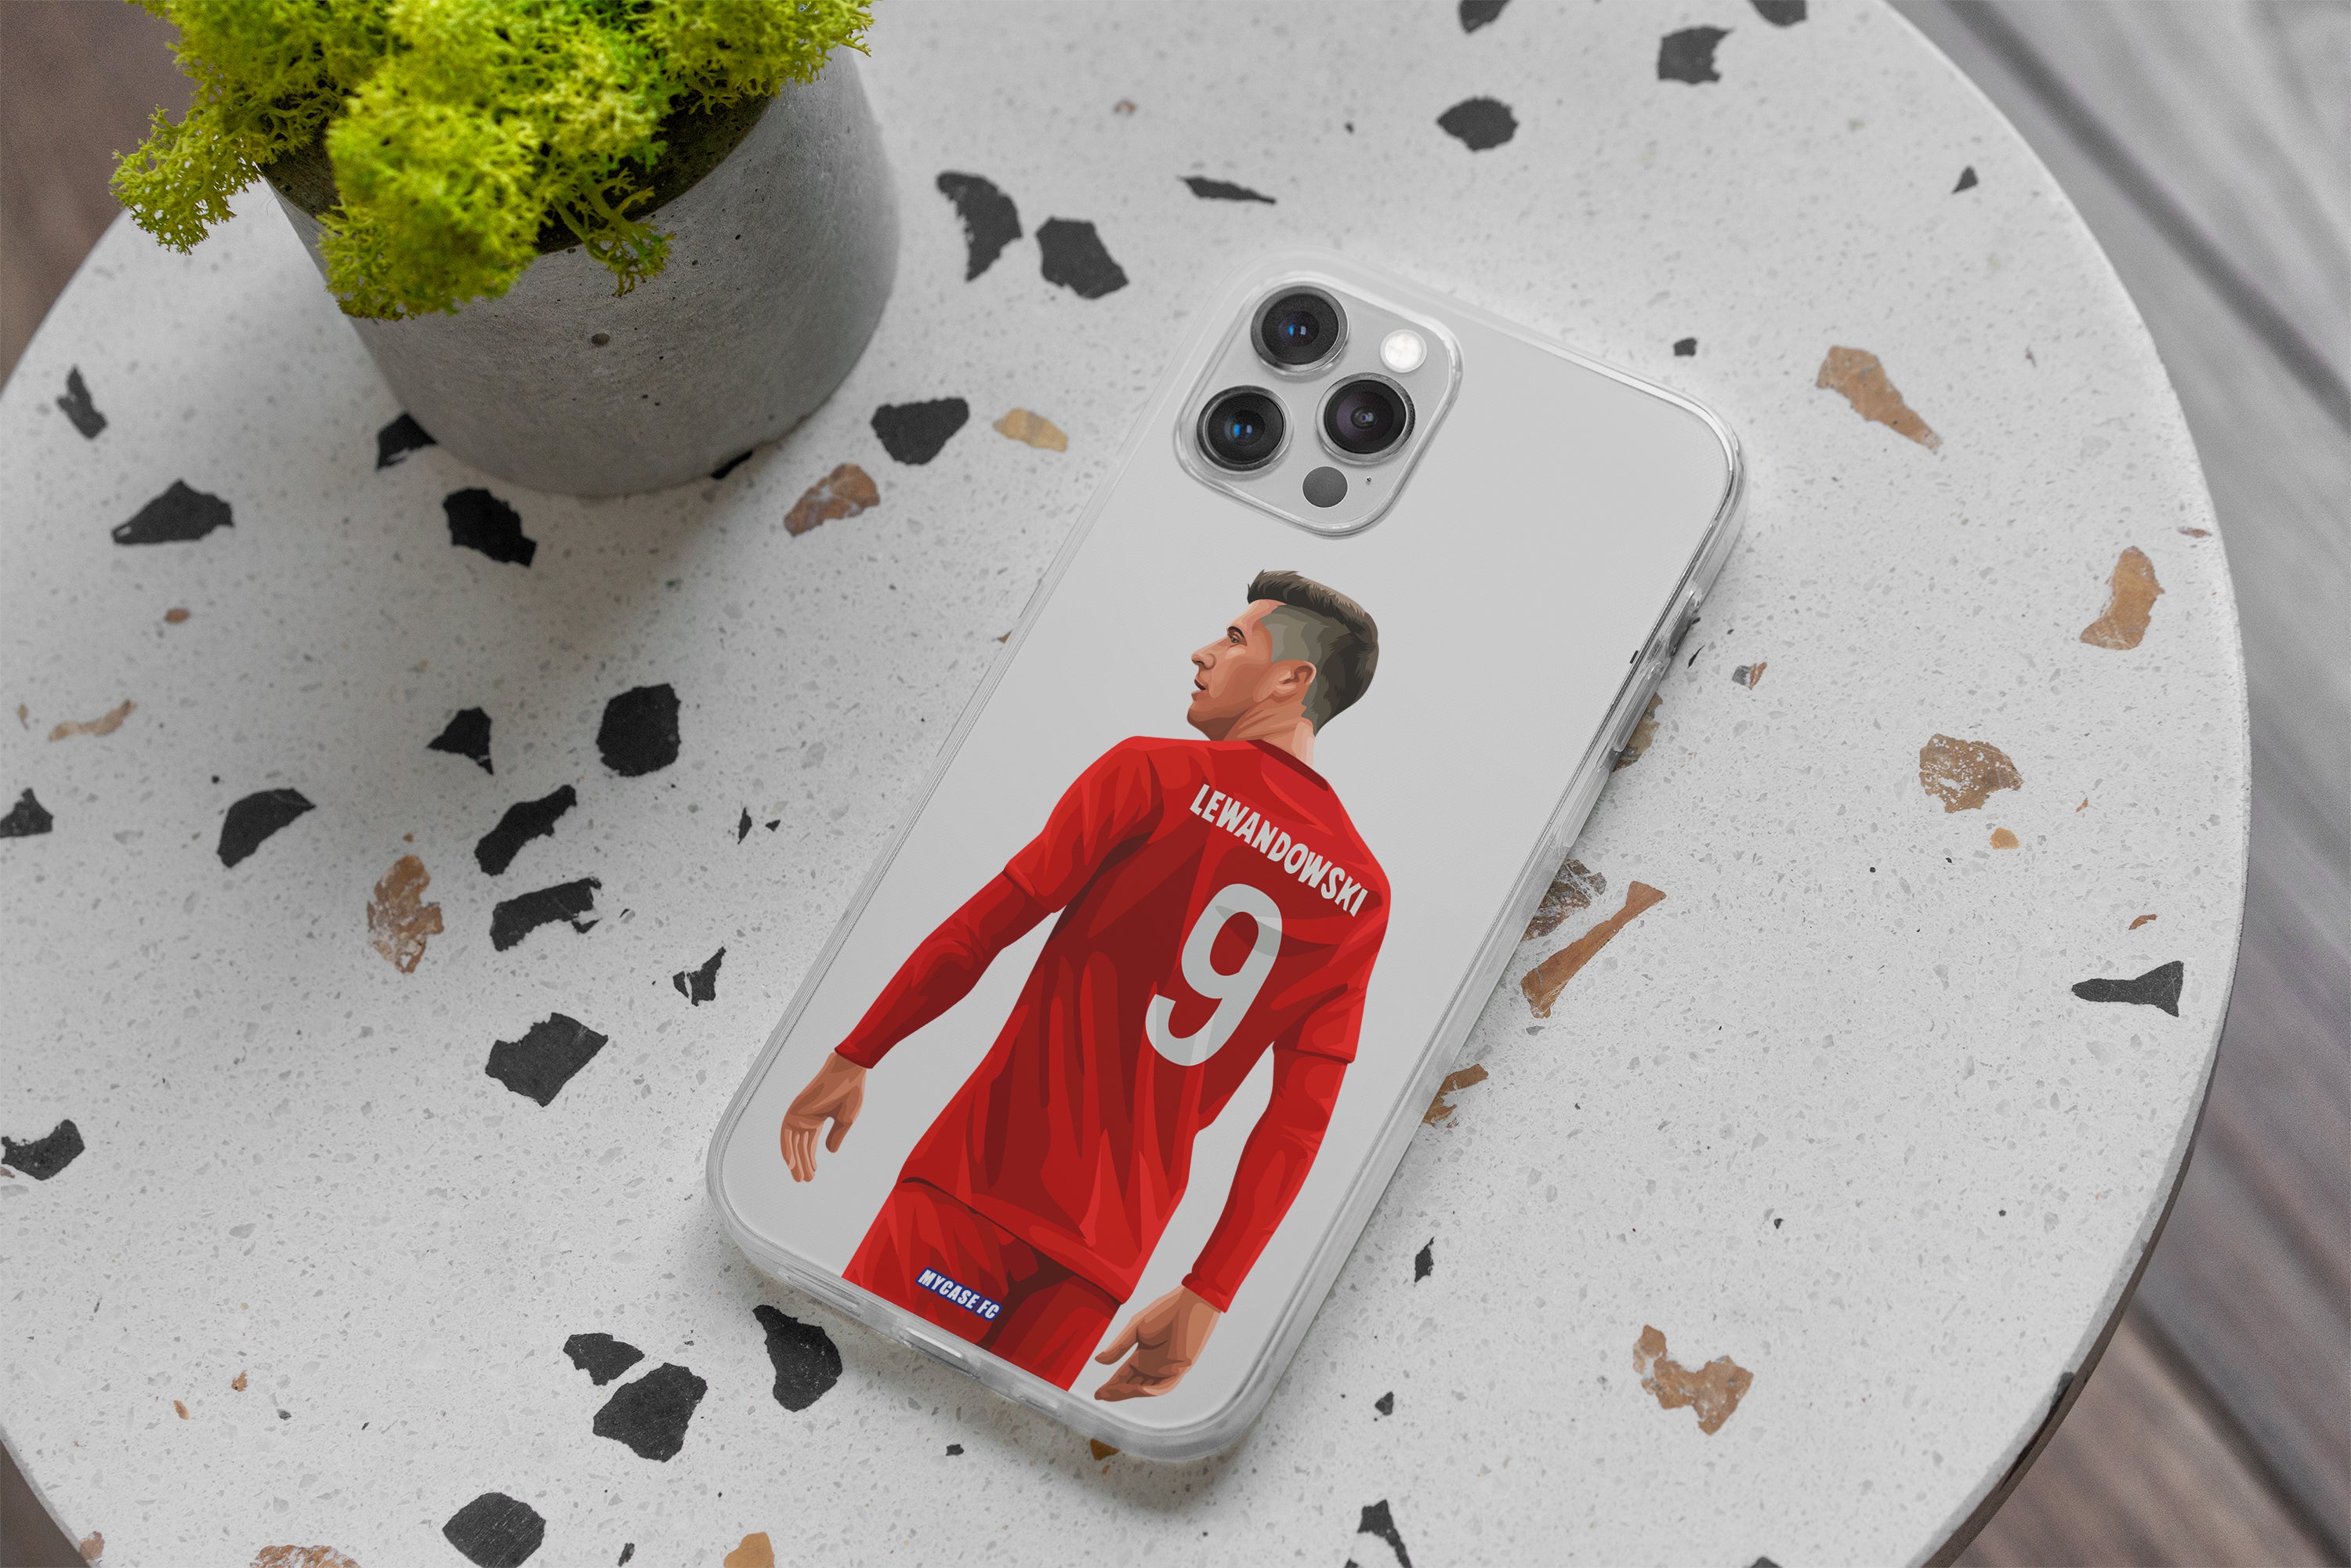 Emportez l'esprit du Bayern Munich partout avec vous grâce à notre collection de coques pour iPhone 11 Pro